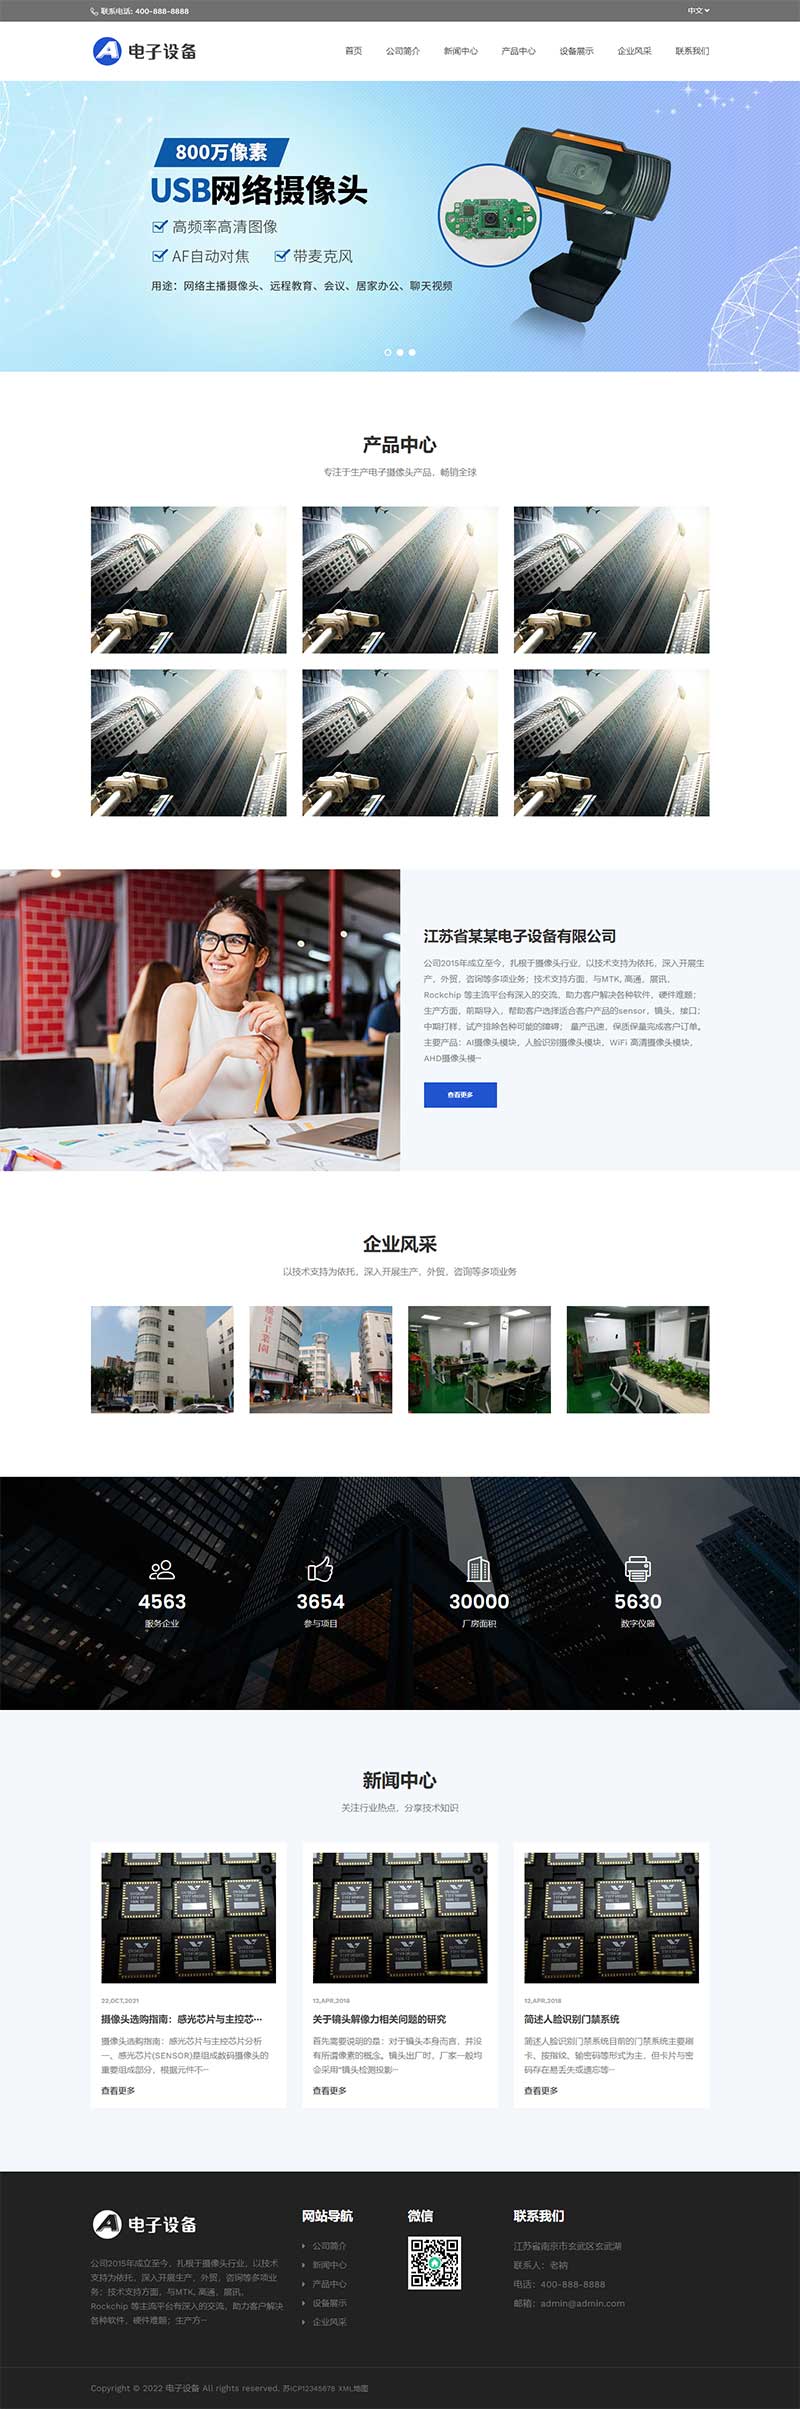 中英文双语电子摄像头设备网站源码 网络摄像头探头pbootcms网站模板(自适应移动端)-1